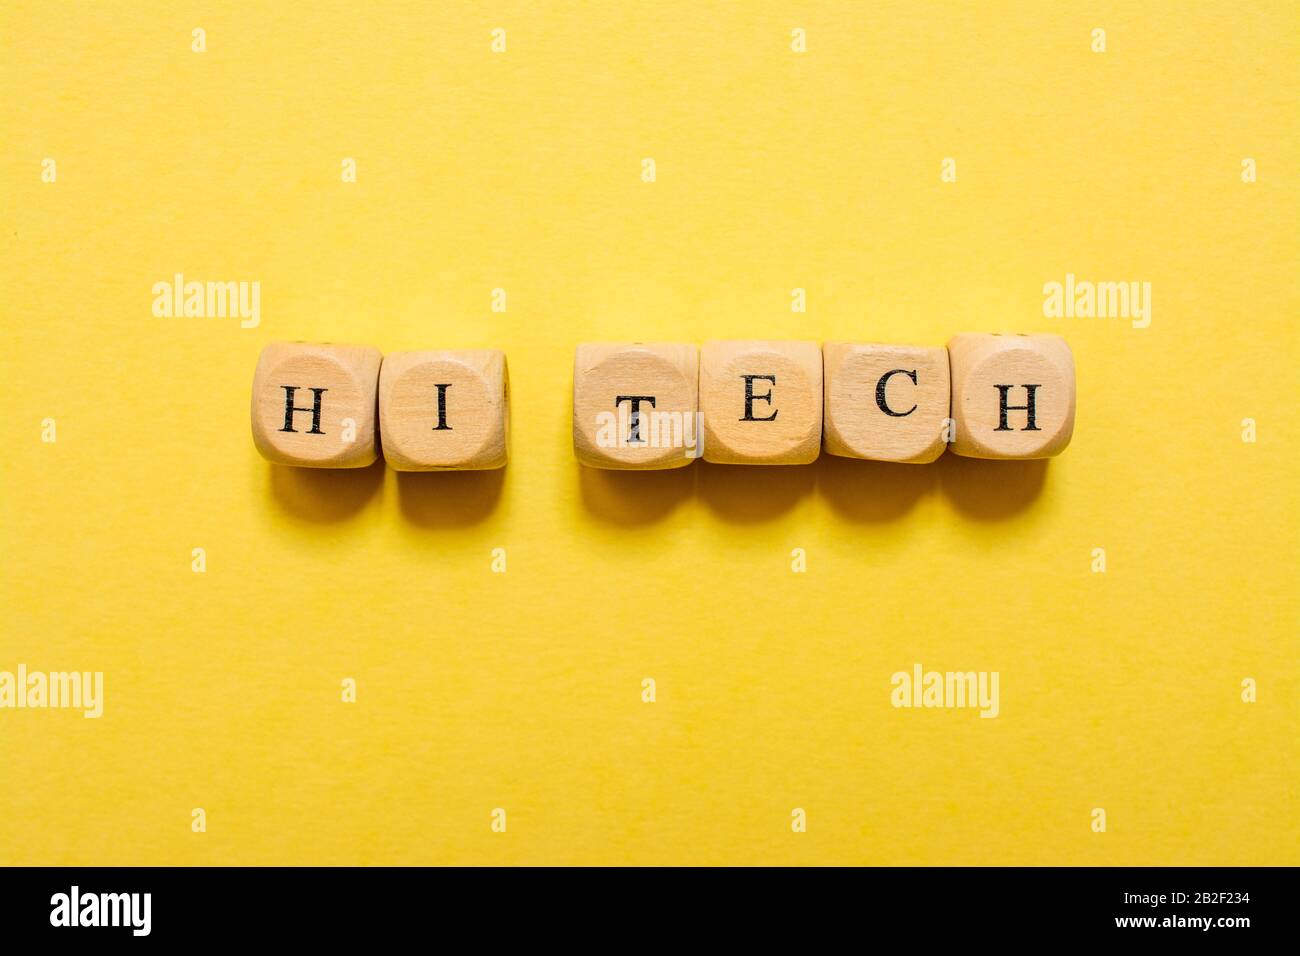 Das Wort Hi Tech, Text mit Würfeln auf gelbem Hintergrund Stockfoto